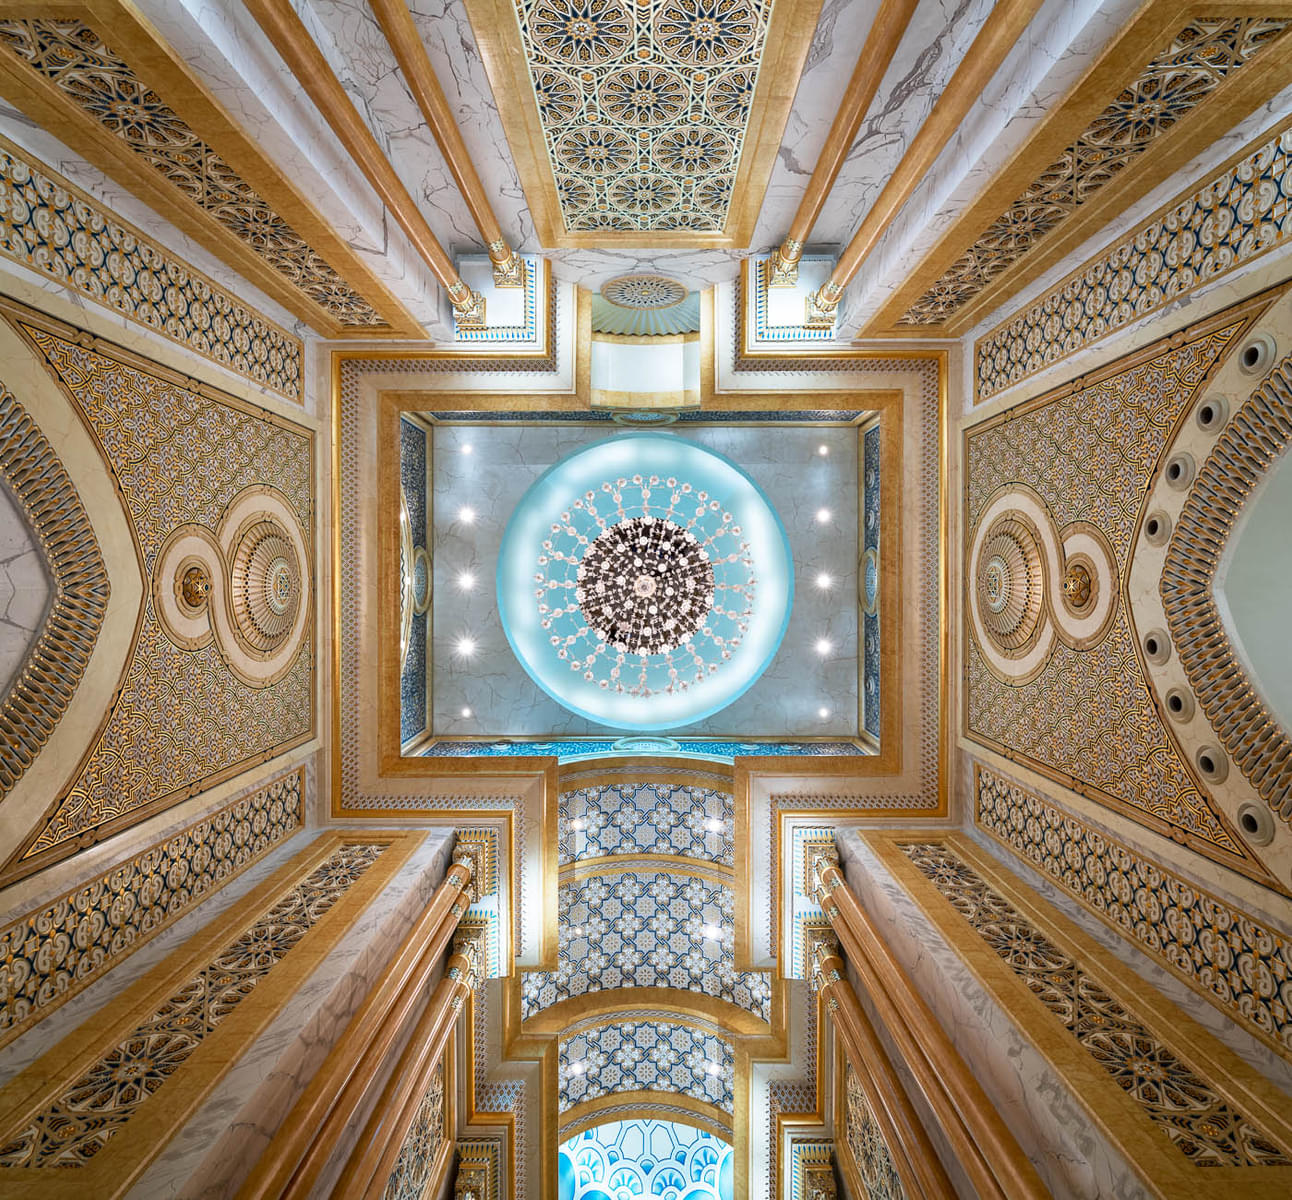 Detailed and magnificent interiors at Qasr Al Watan